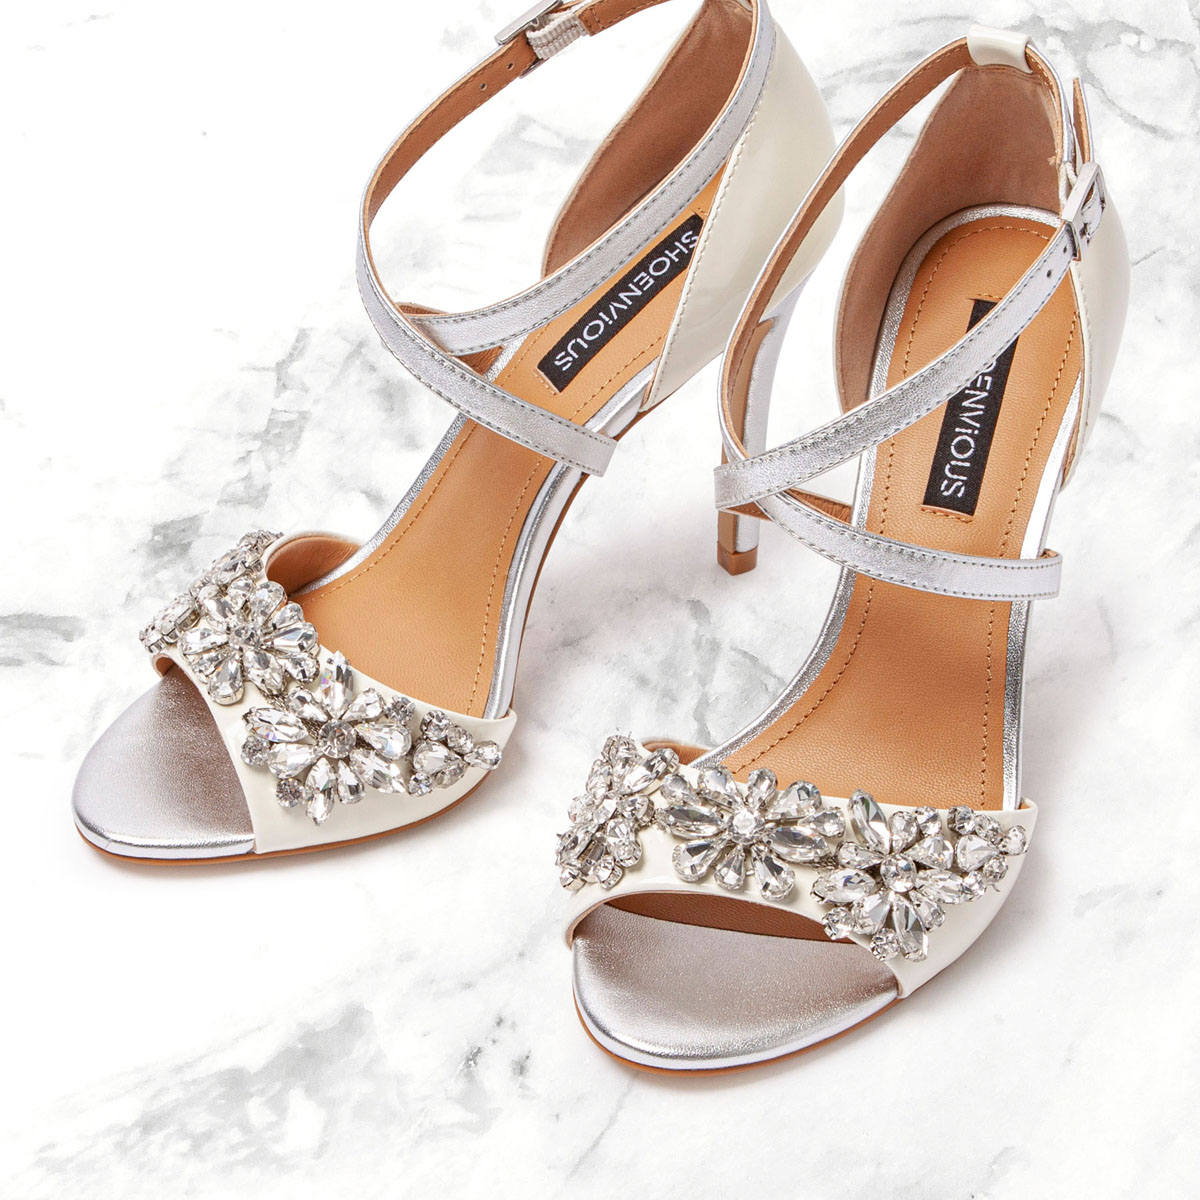 22-shoenvious-bridal-shoes